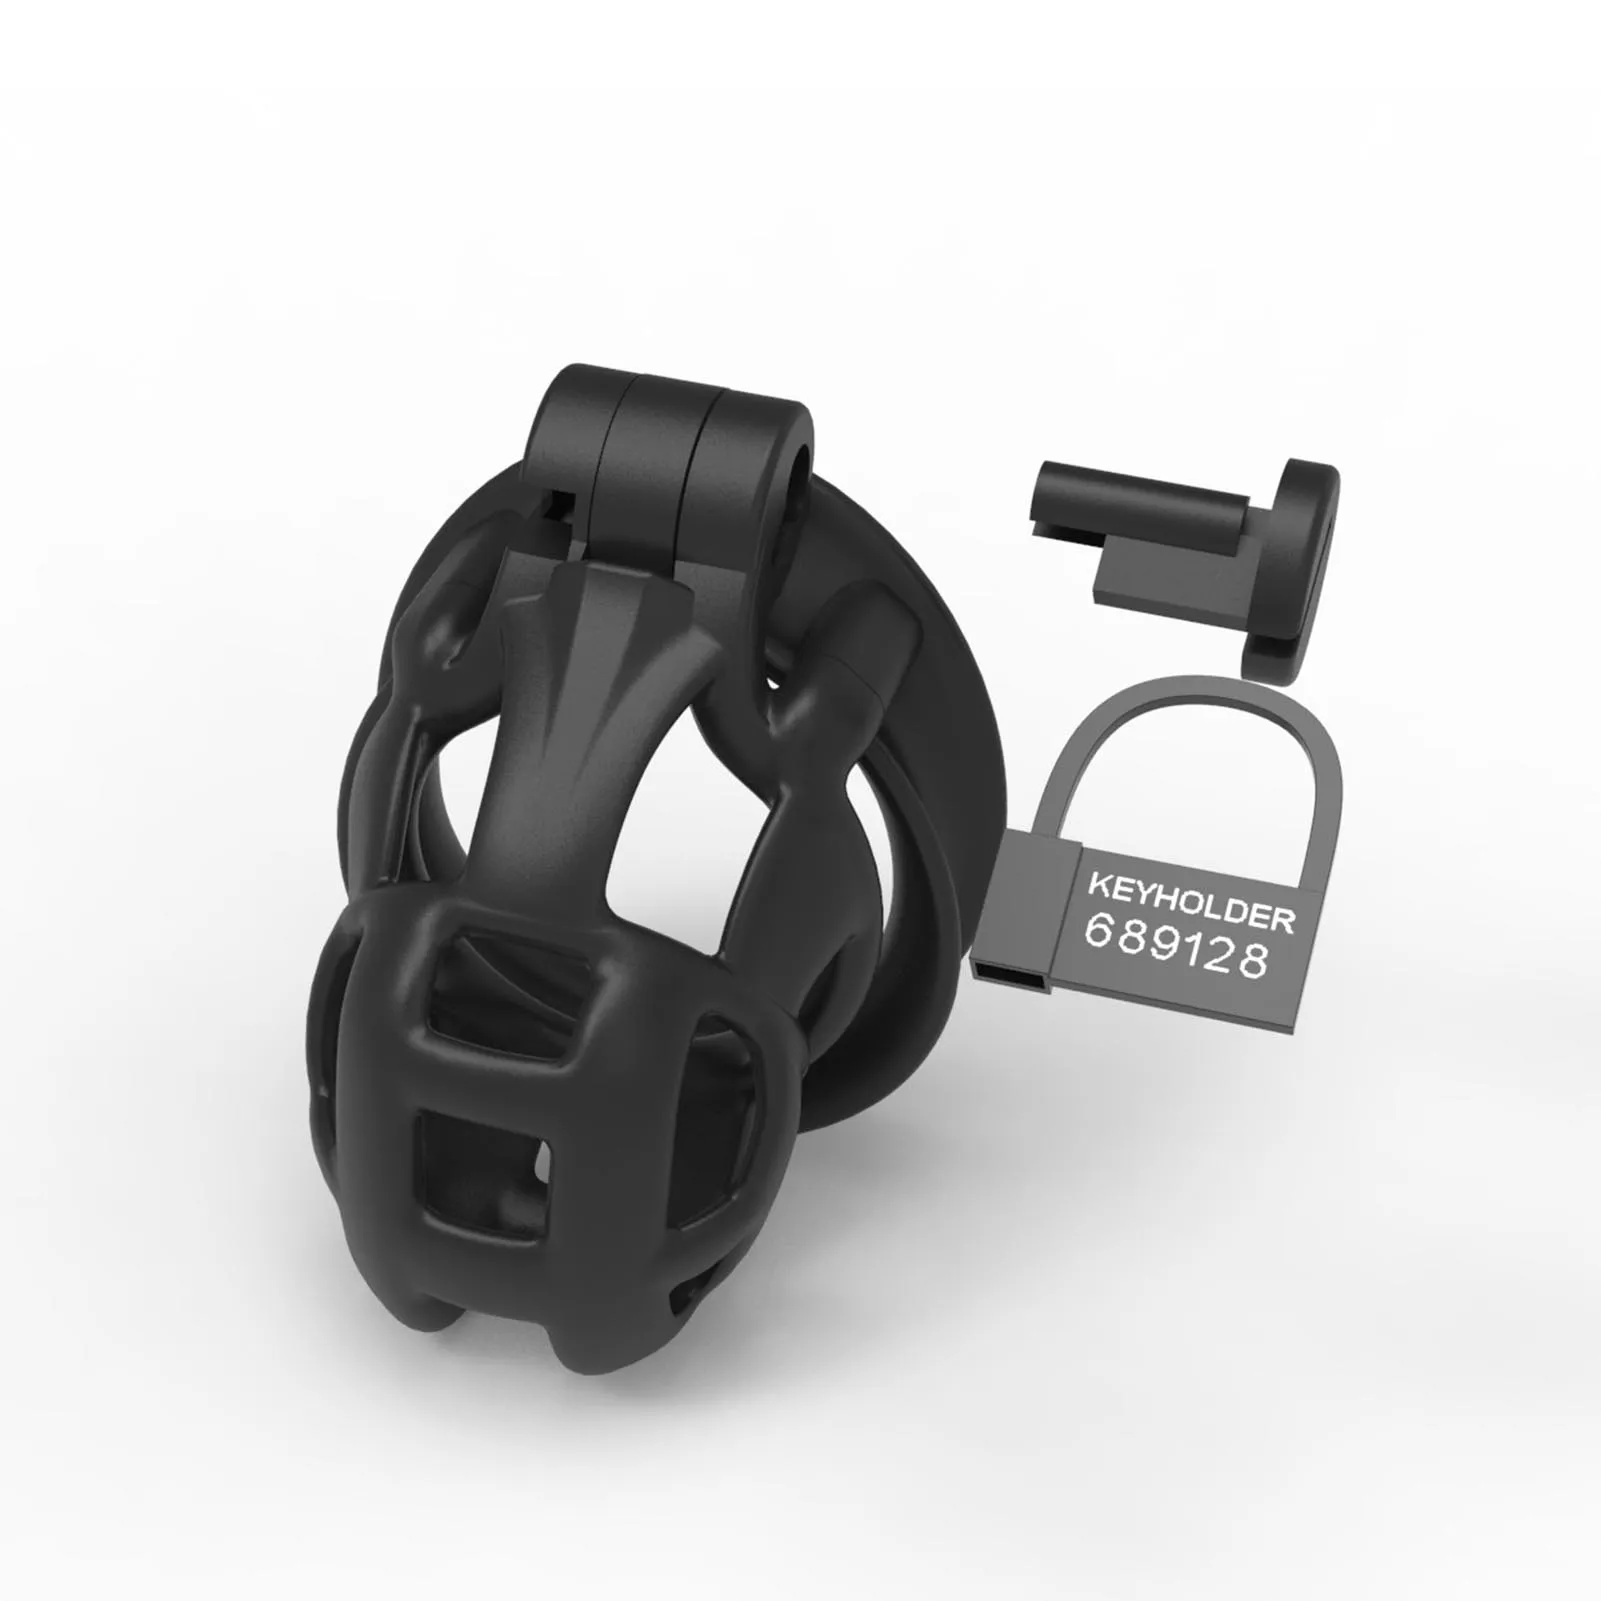 Opinie Czarna klatka Chastity V2.0 dla mężczyzn - urządzenie bondag… sklep online